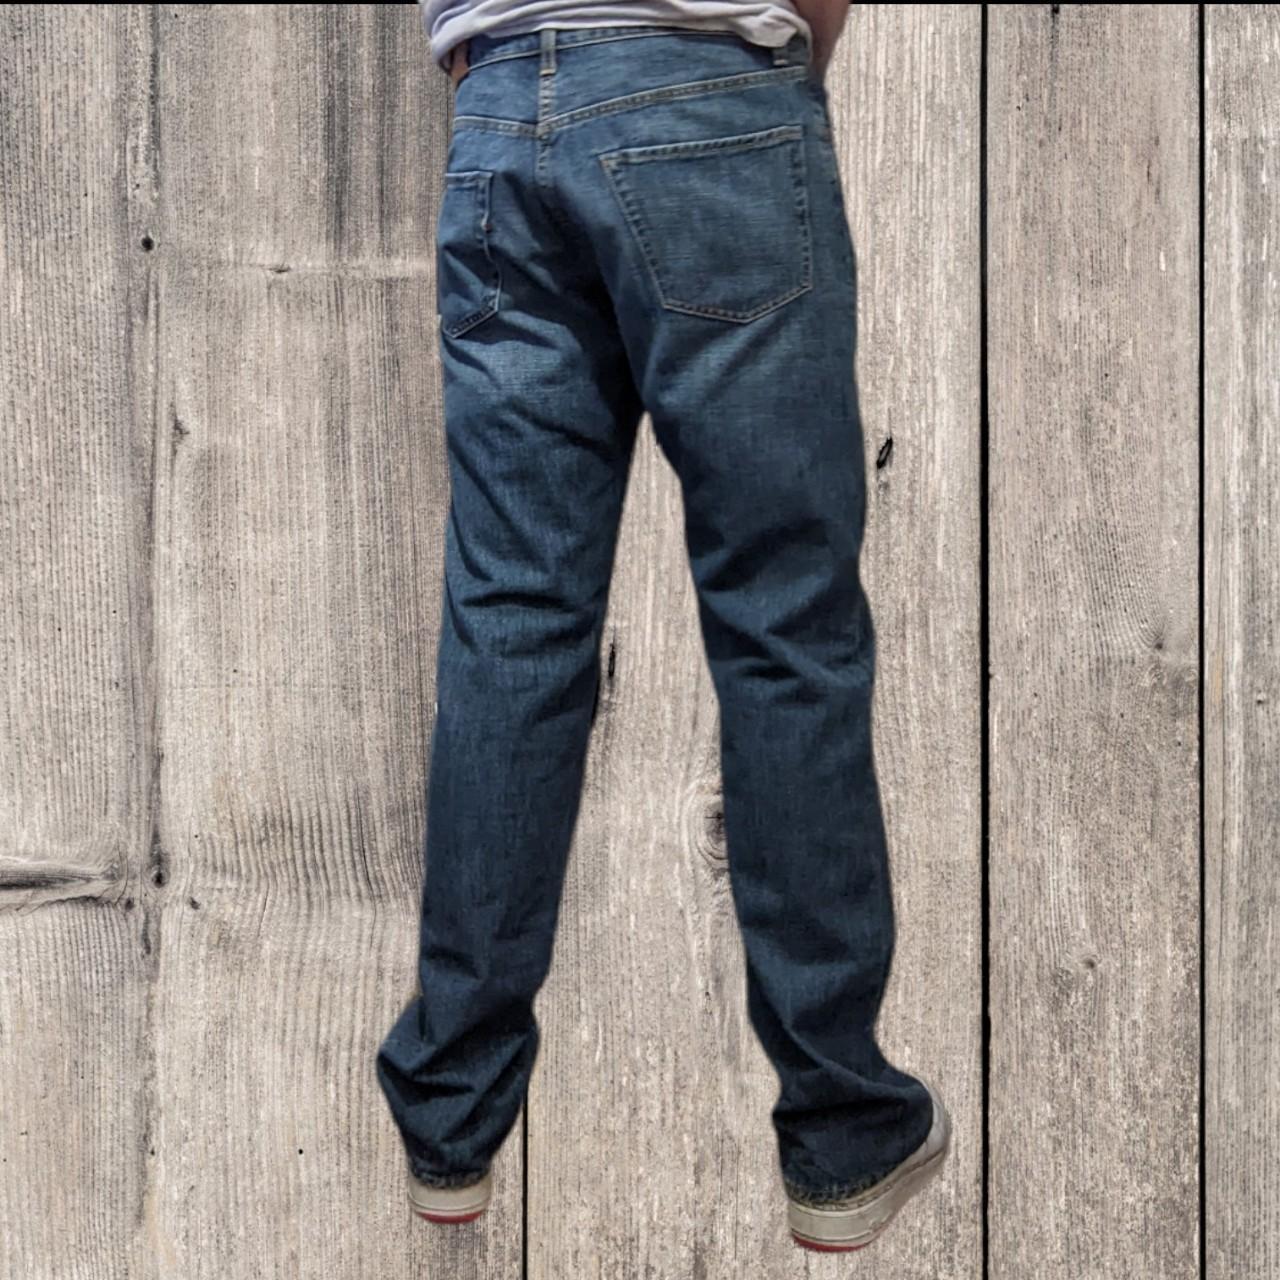 Gucci Jeans 🙌 lovely blue denim designer jeans from... - Depop